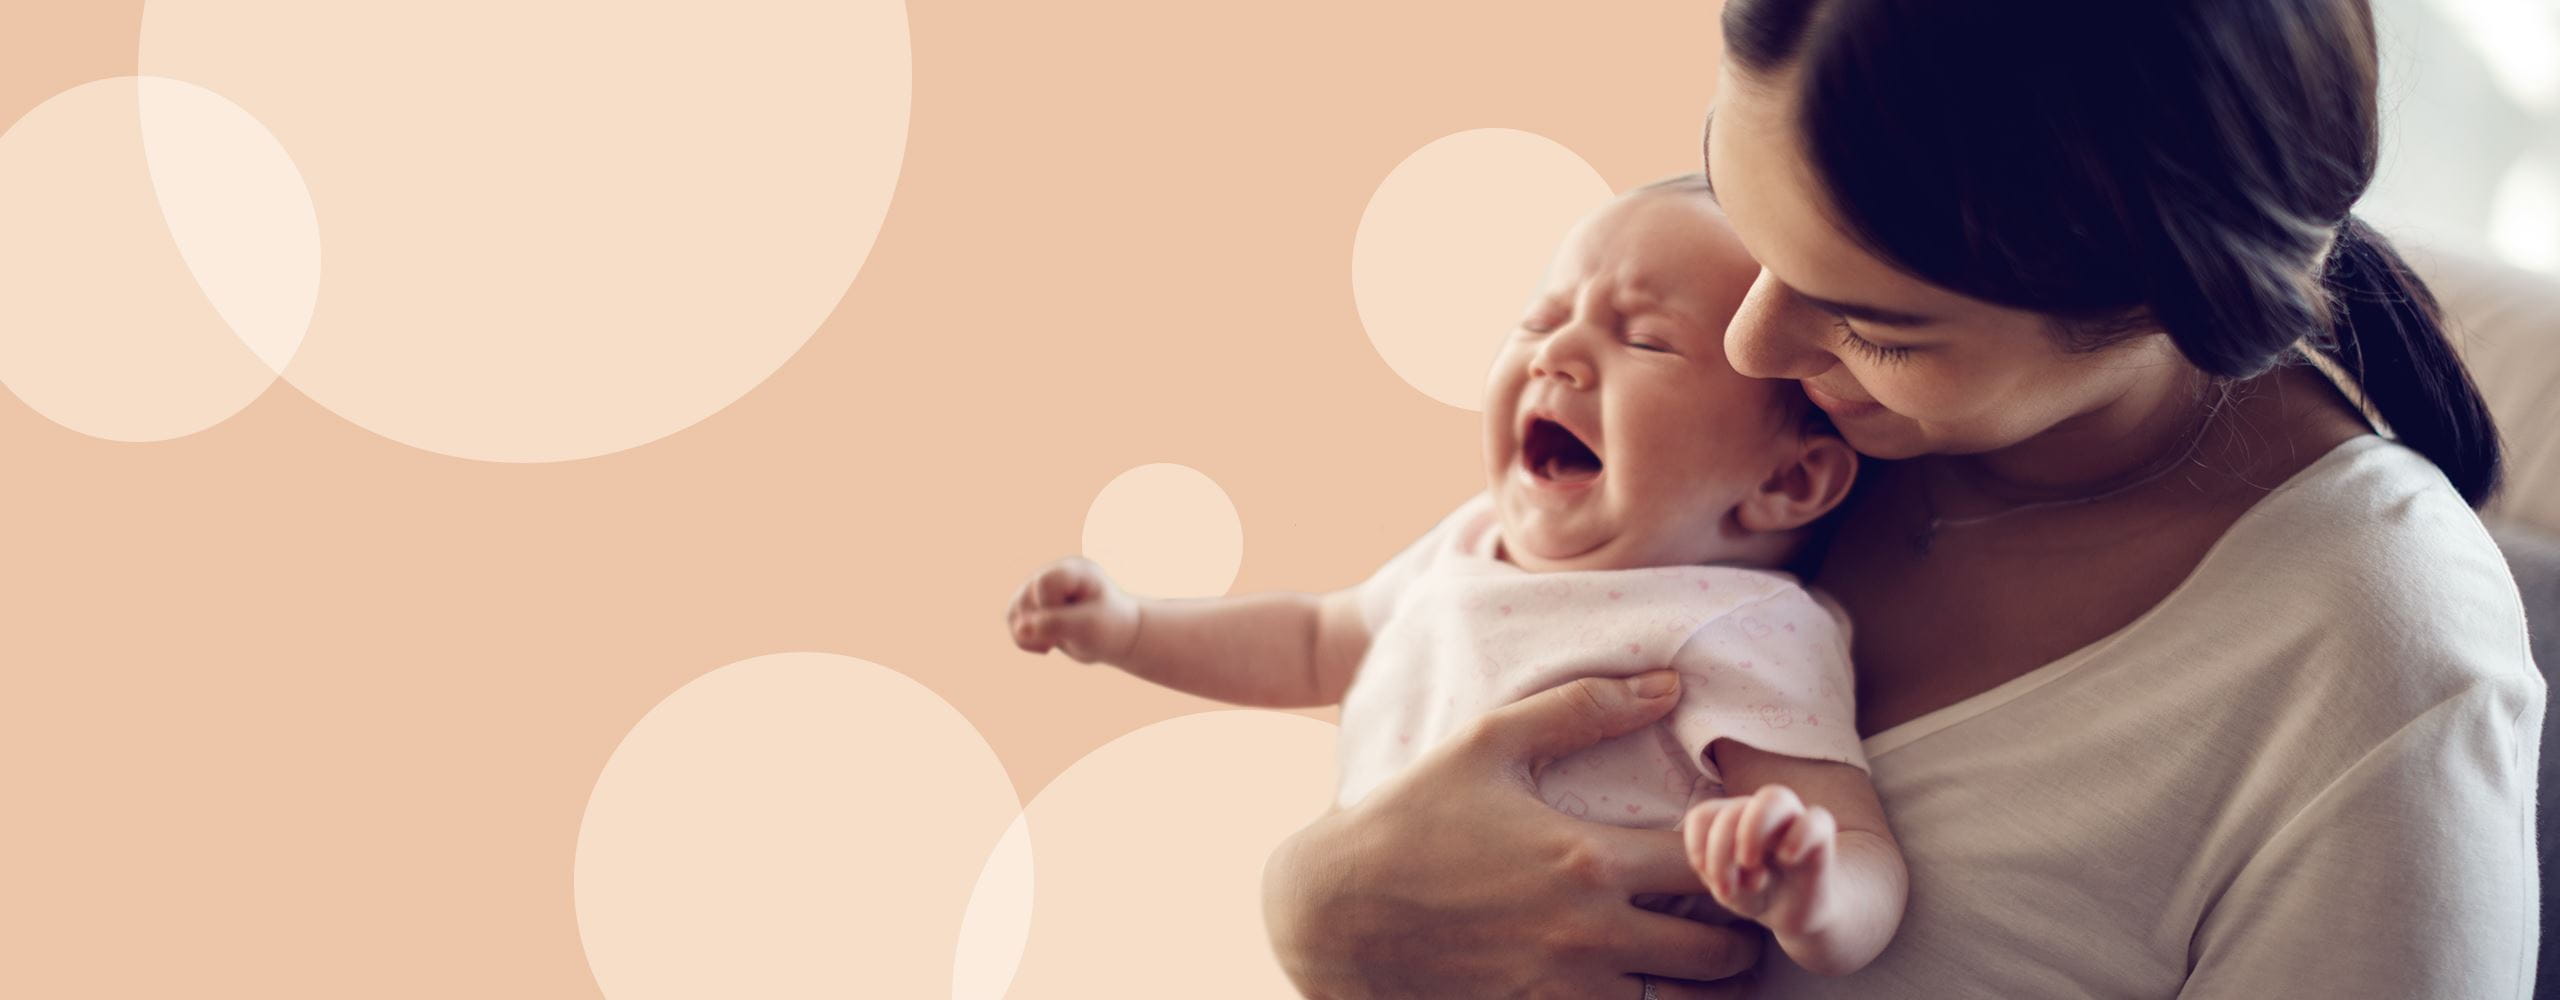 dlaczego niemowle płacze z powodu mokrej pieluchy